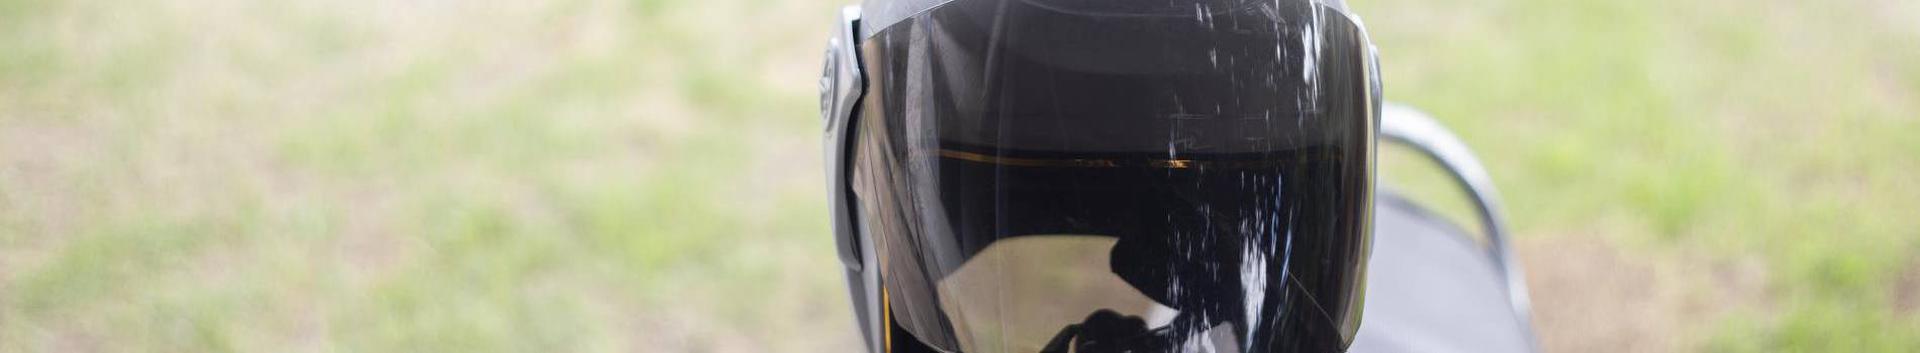 Moto24.ee on e-pood, kust leiab iga mootorrattur endale kvaliteetse sõiduvarustuse, rehvid, kuluosad ning ka lisa- ja garaažitarvikud. Oleme kvaliteetsete motobrändide maaletoojad.